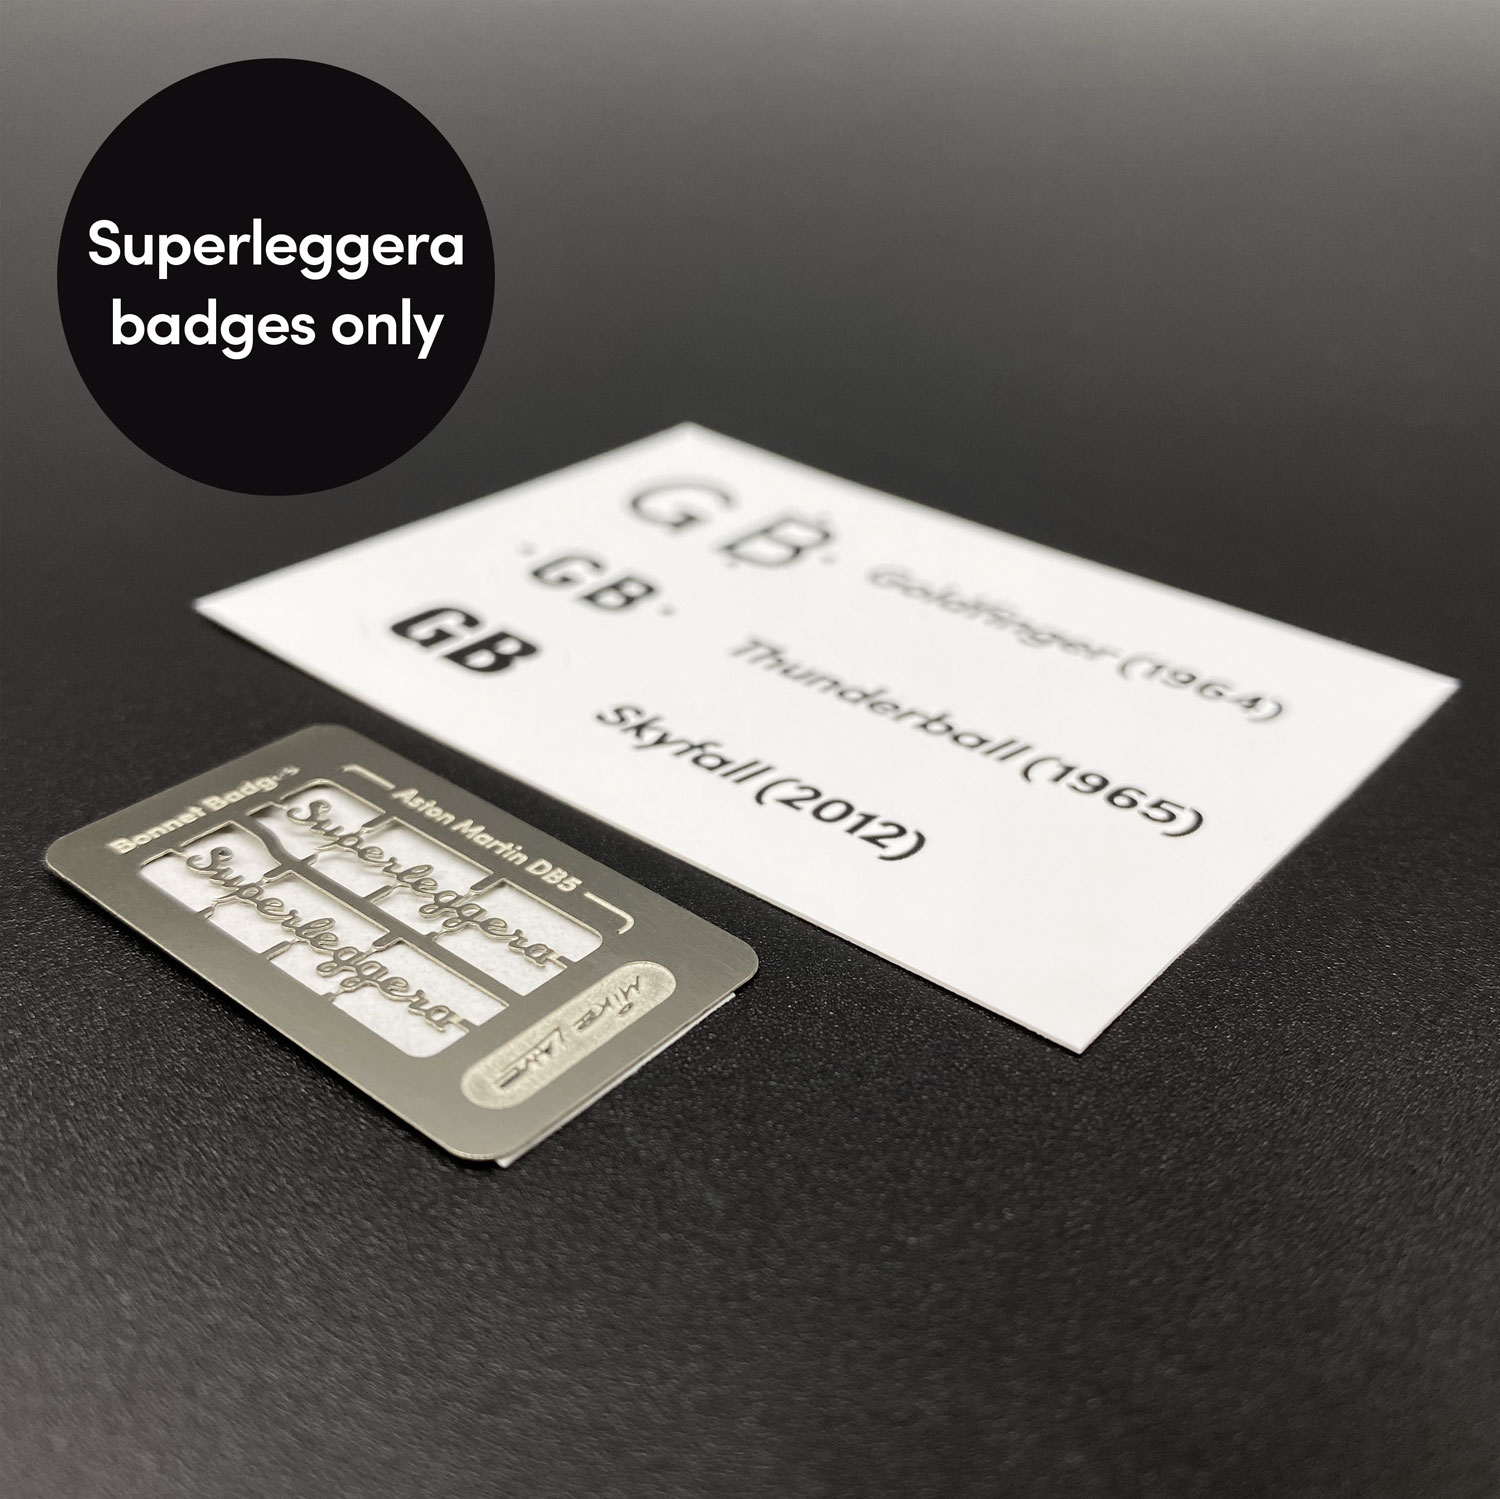 'Superleggera' only badge set for Eaglemoss DB5